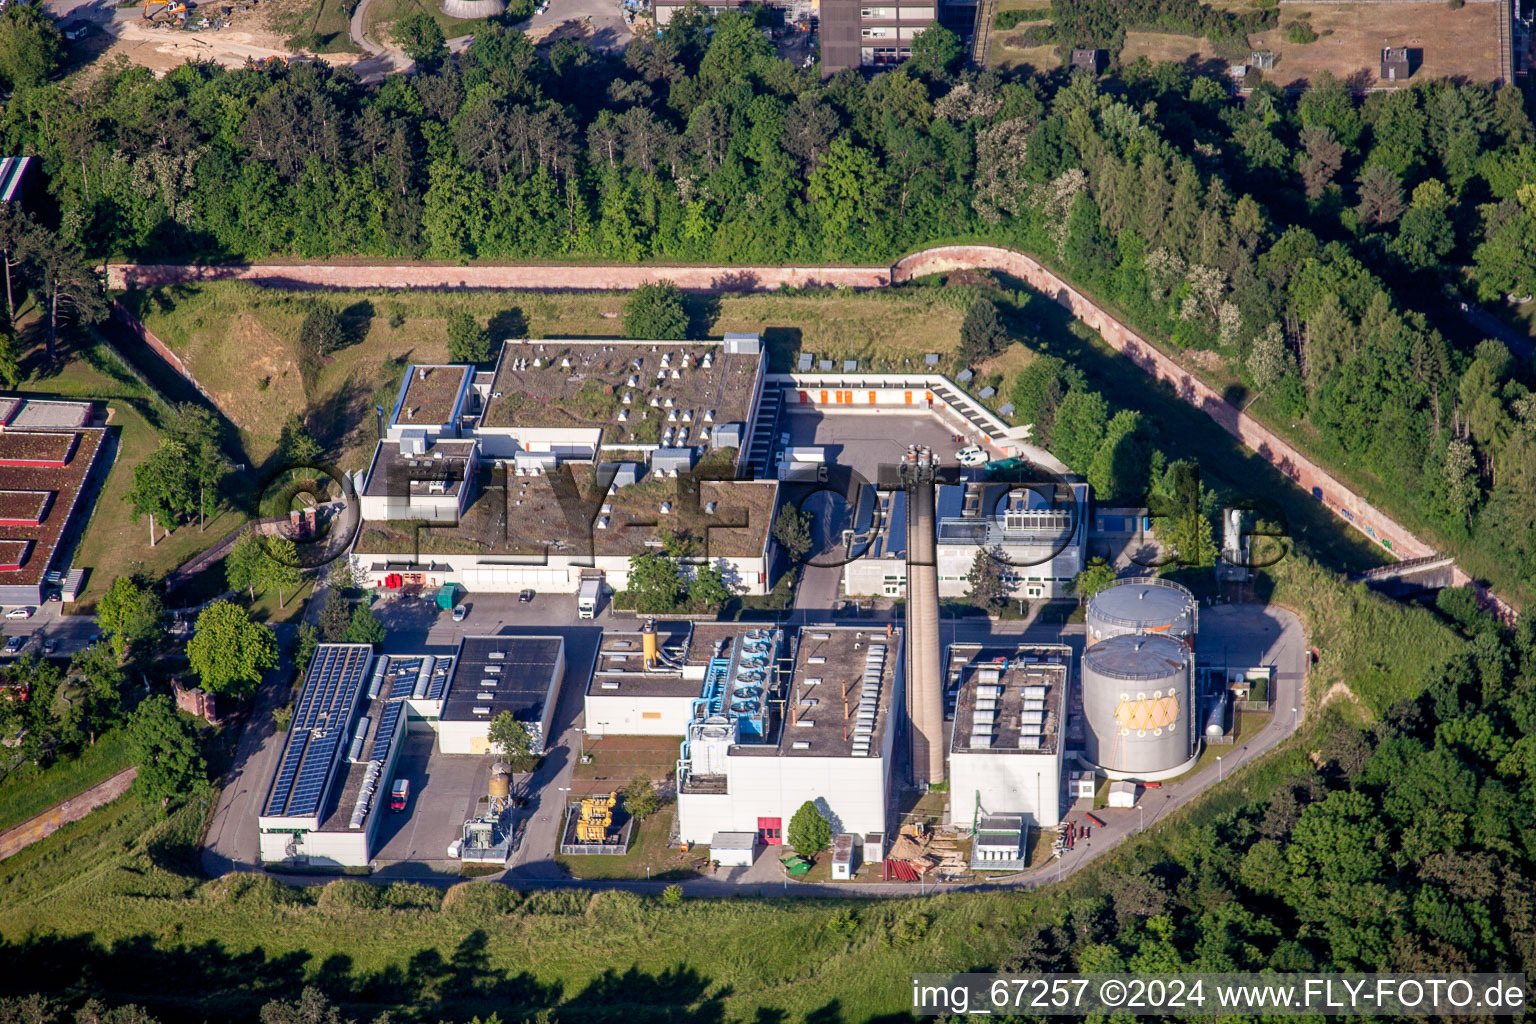 Vue aérienne de Zone universitaire du campus de l'usine principale de Fort Oberer Eselsberg (usine XXXVI) à Ulm dans le département Bade-Wurtemberg, Allemagne